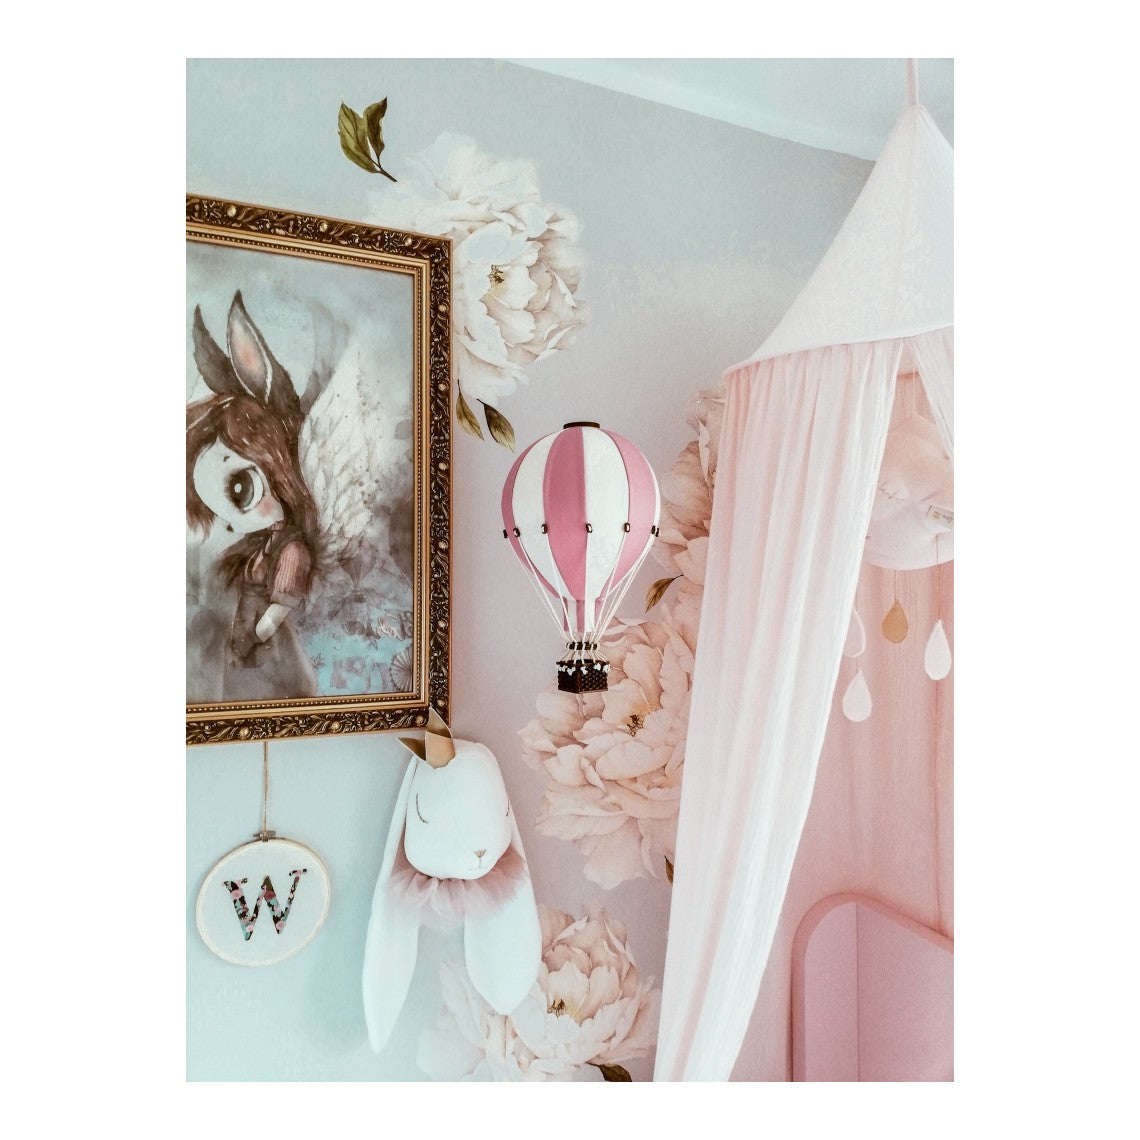 Balão de ar decorativo L - Branco e Rosa